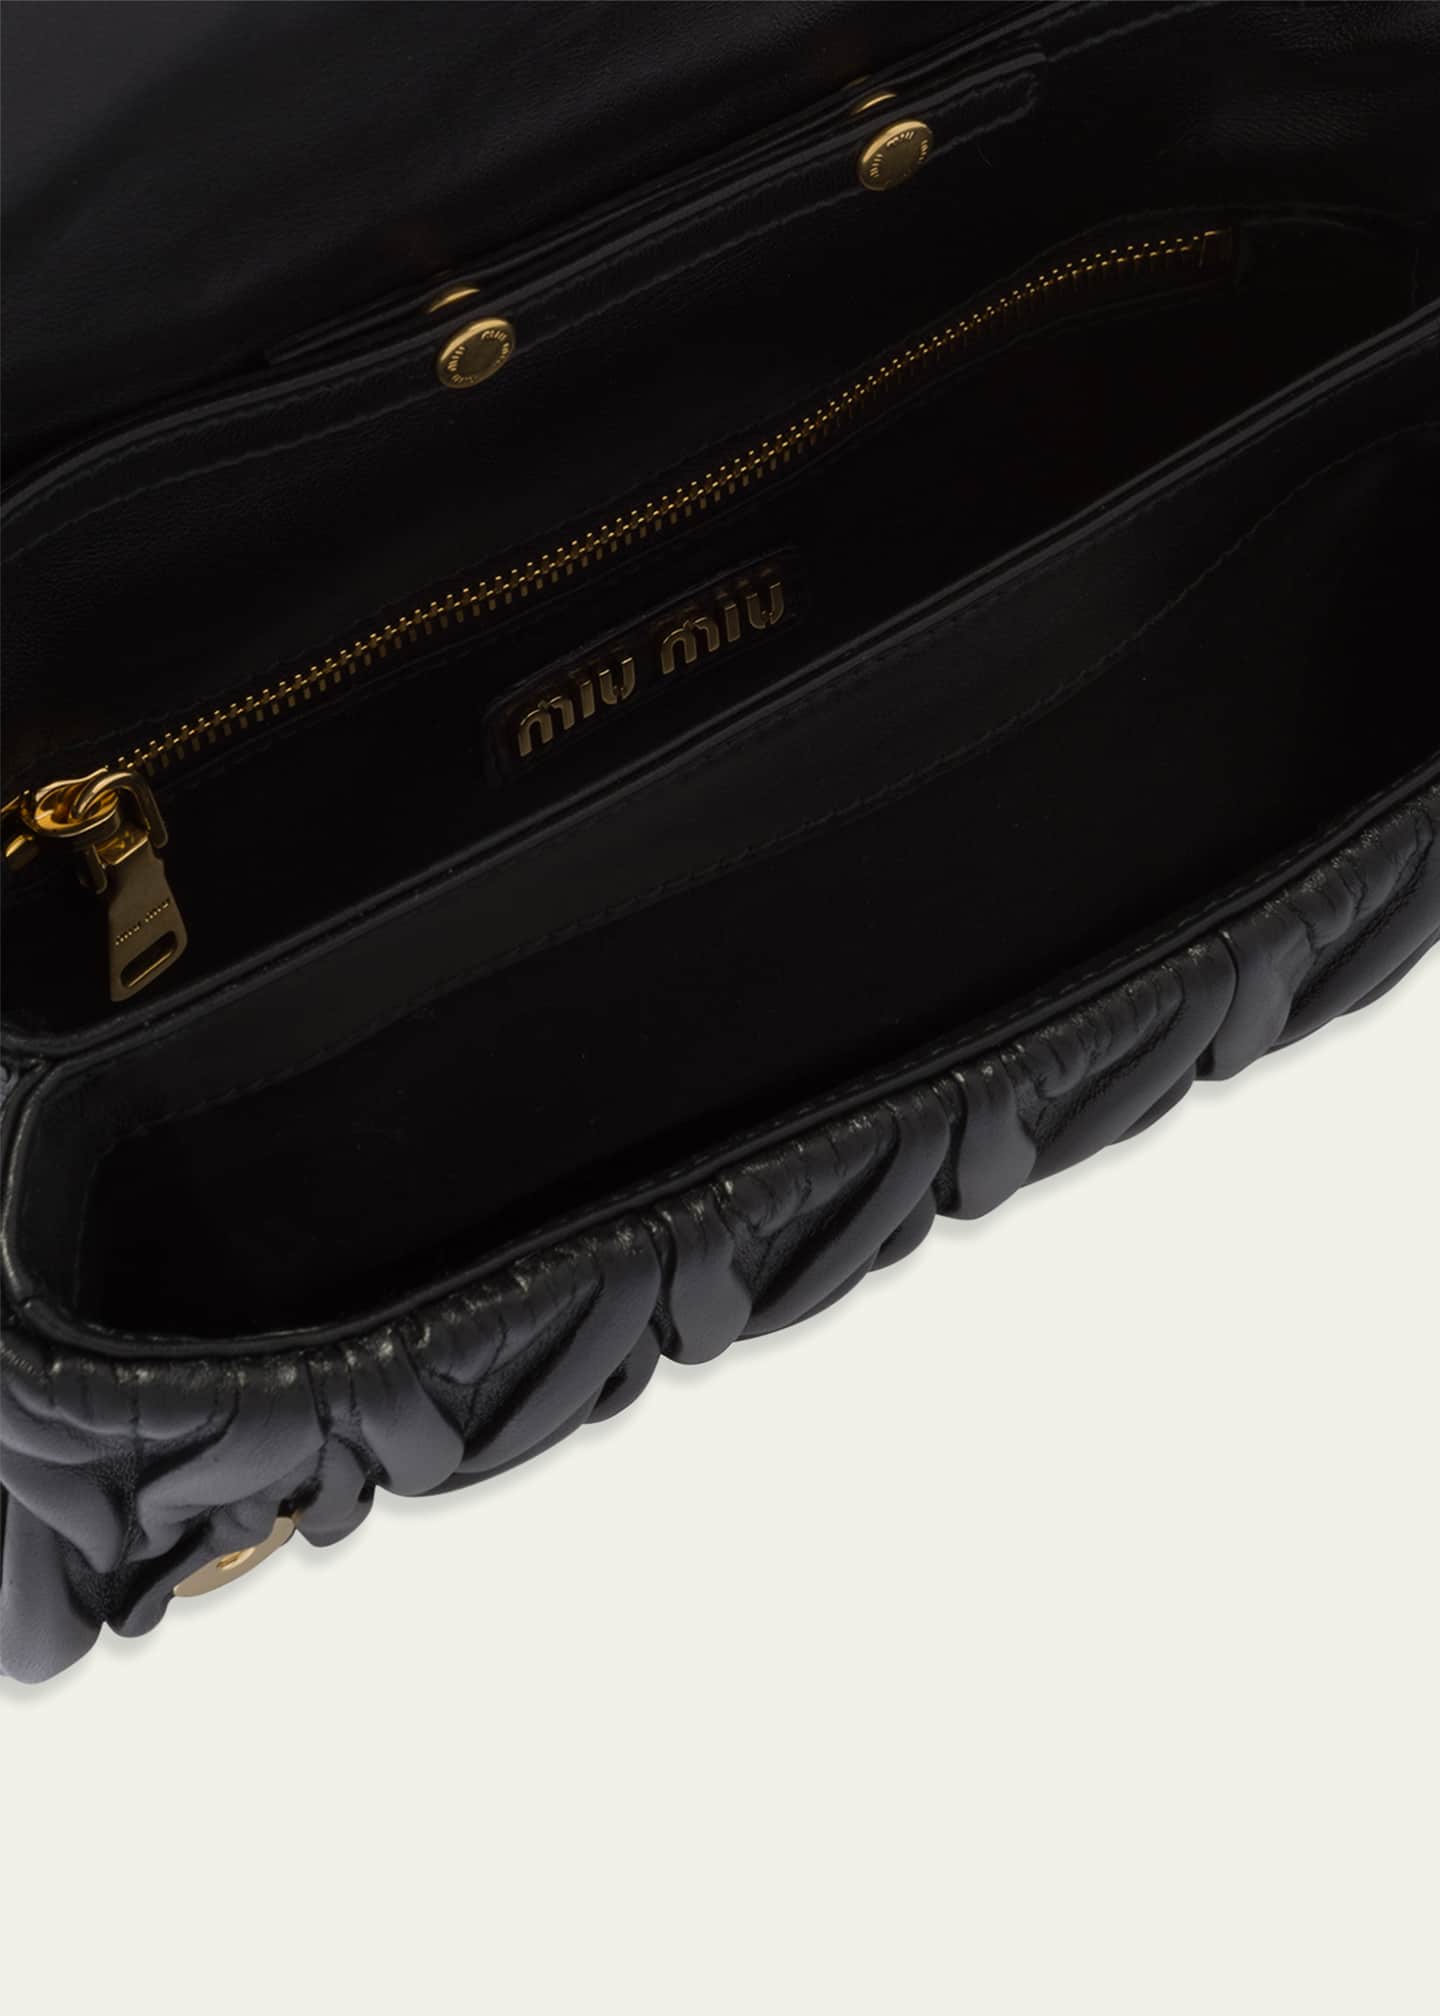 Miu Miu Nappa Leather Bag Bergdorf Goodman